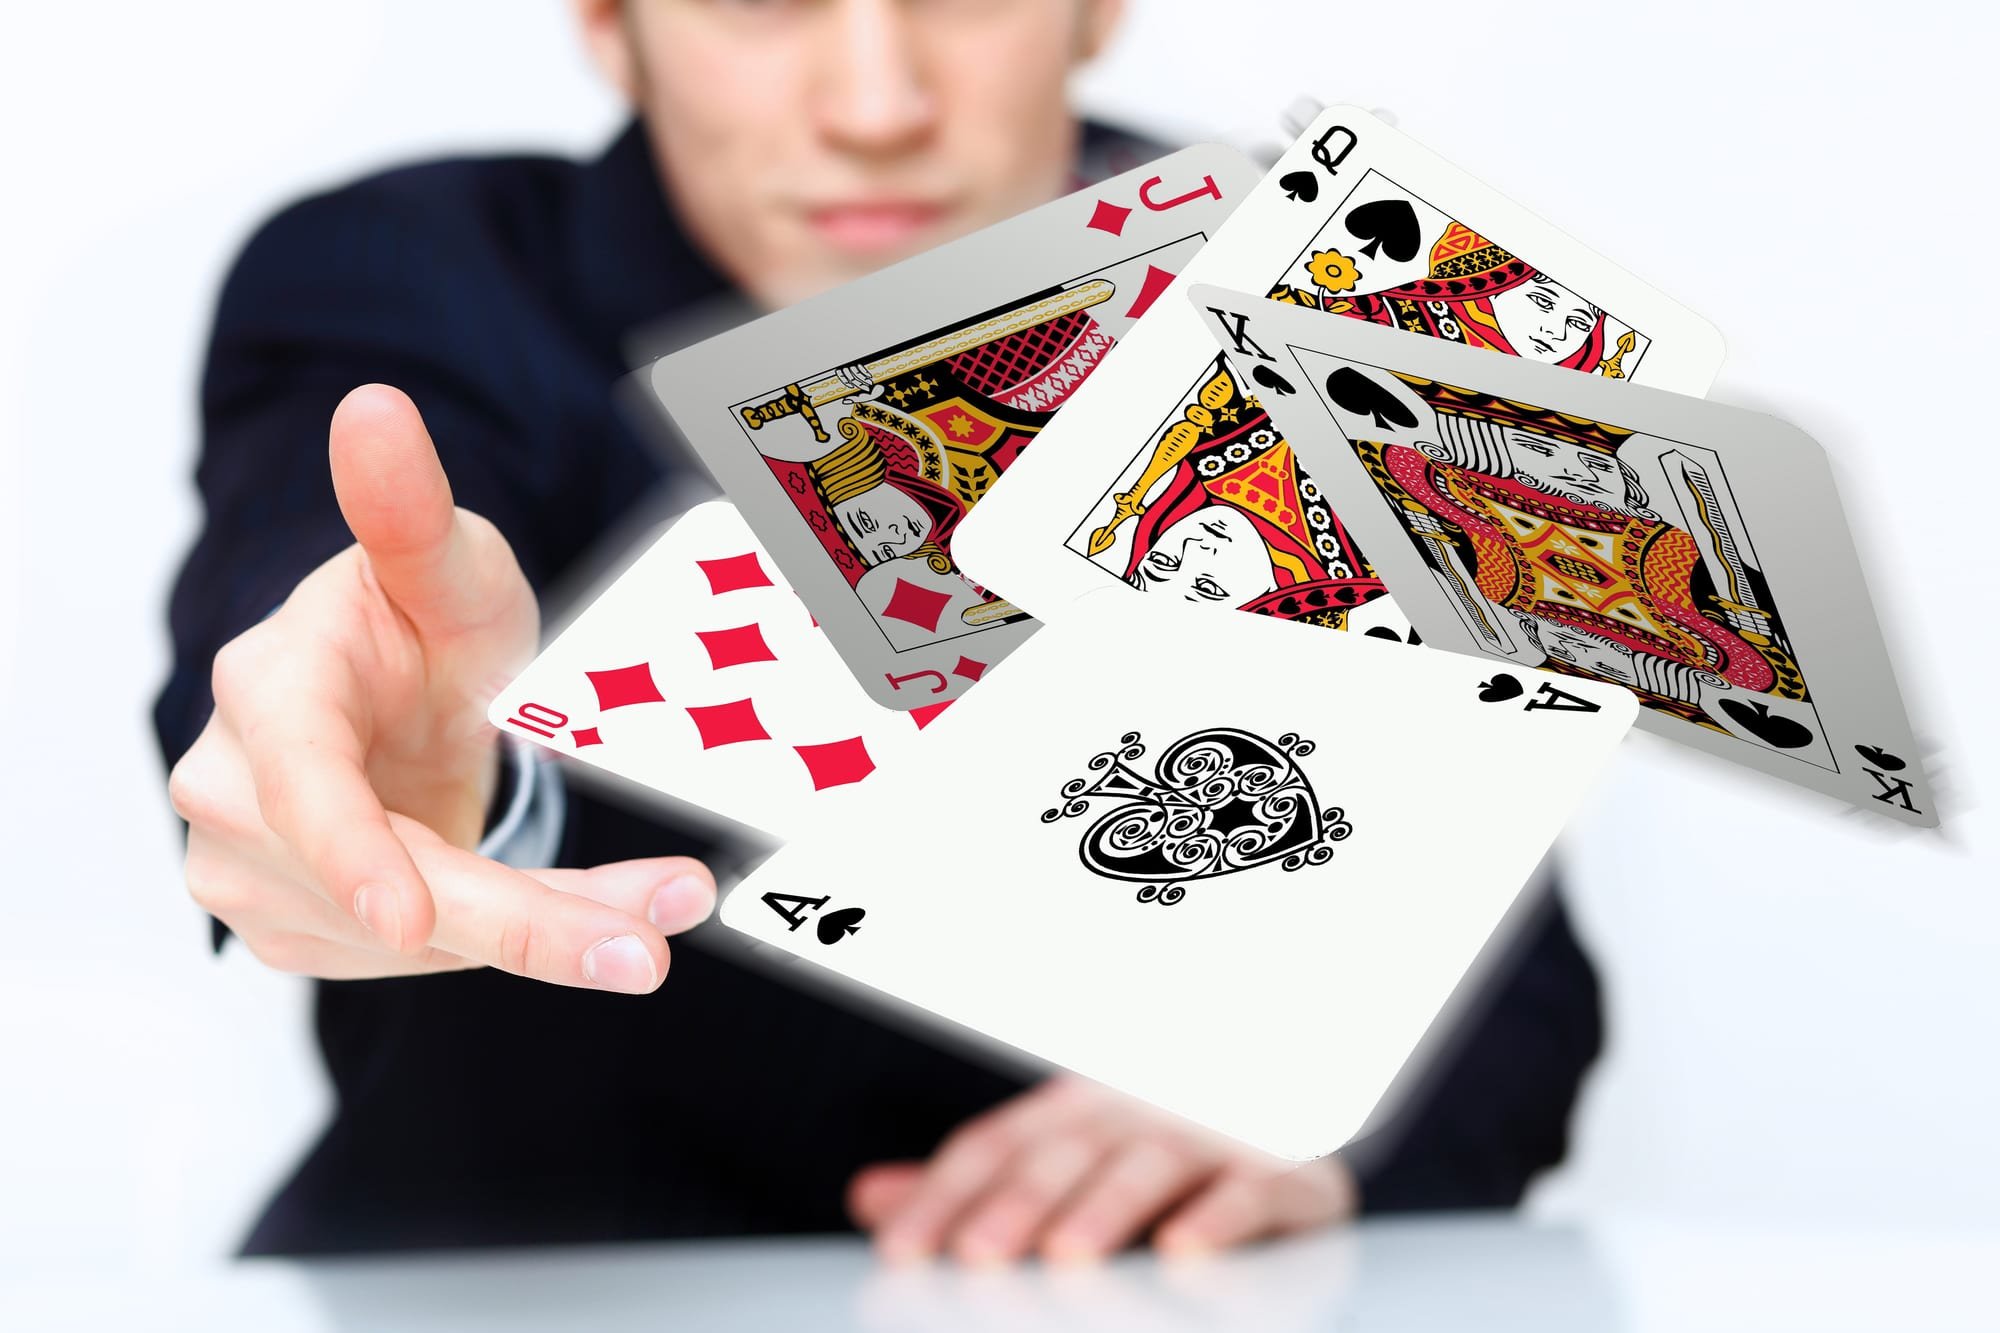 Играю в картах 4. Игральные карты в руке. Люди играющие в карты. Рука с картой. Карточный игрок.